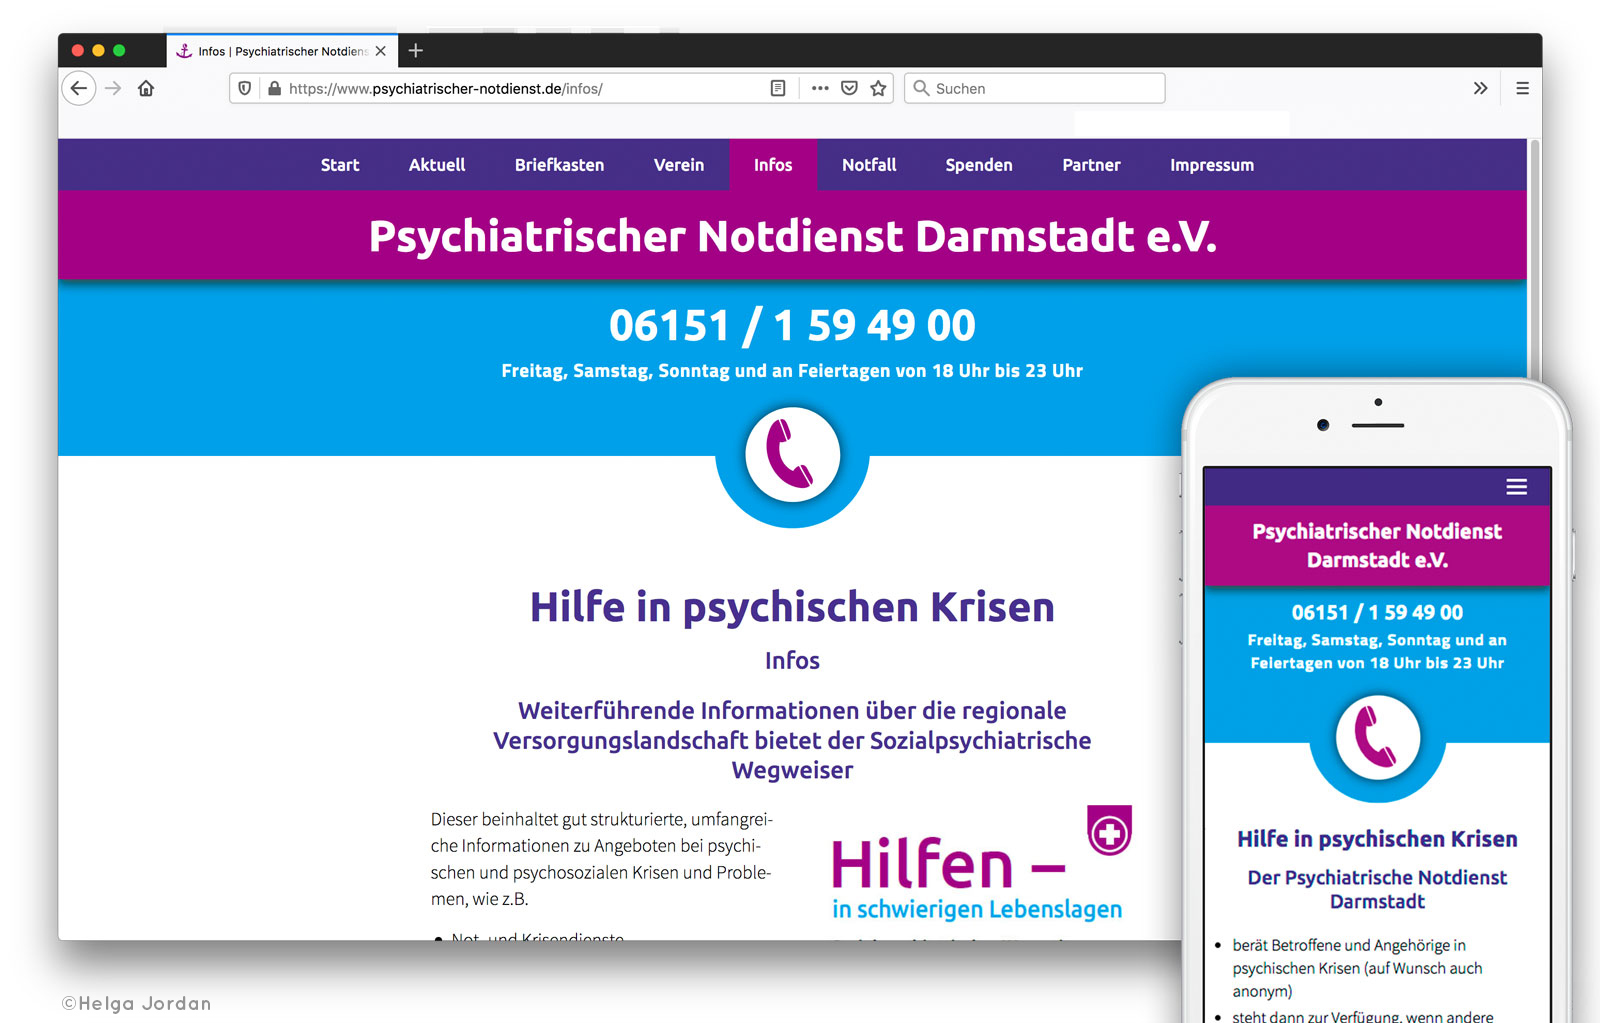 Psychiatrischer Notdienst Darmstadt e.V., Webdesign, Plakate, Flyer, PPT, Text